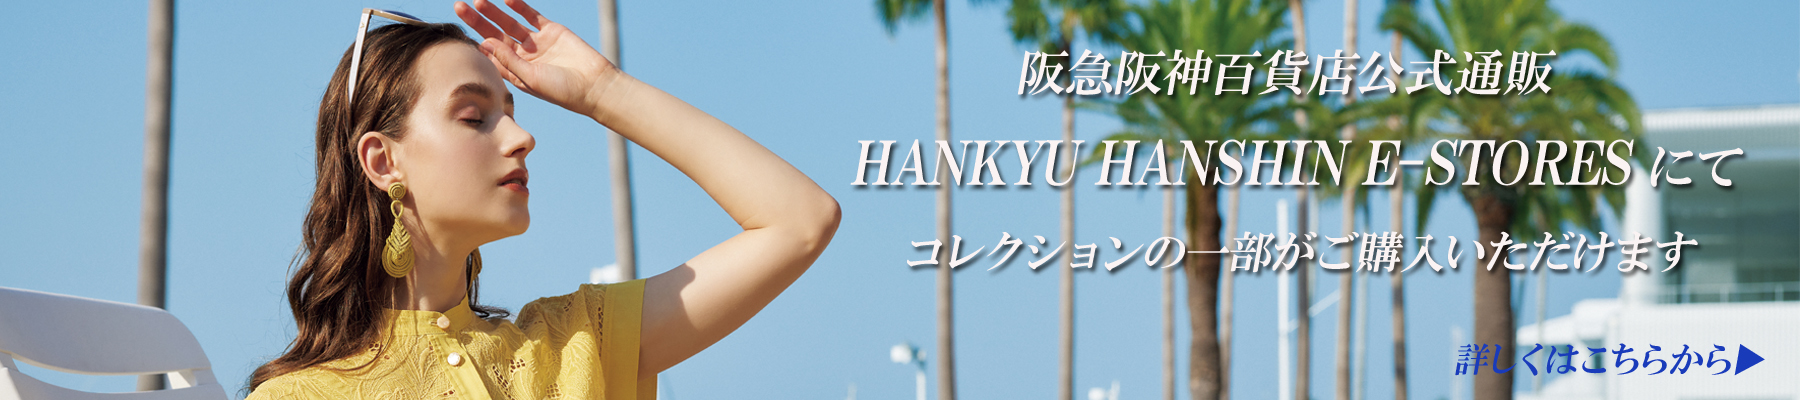 ◇ 阪急阪神百貨店公式通販「HANKYU HANSHIN E-STORES」にて春夏コレクションの一部がご購入いただけます◇